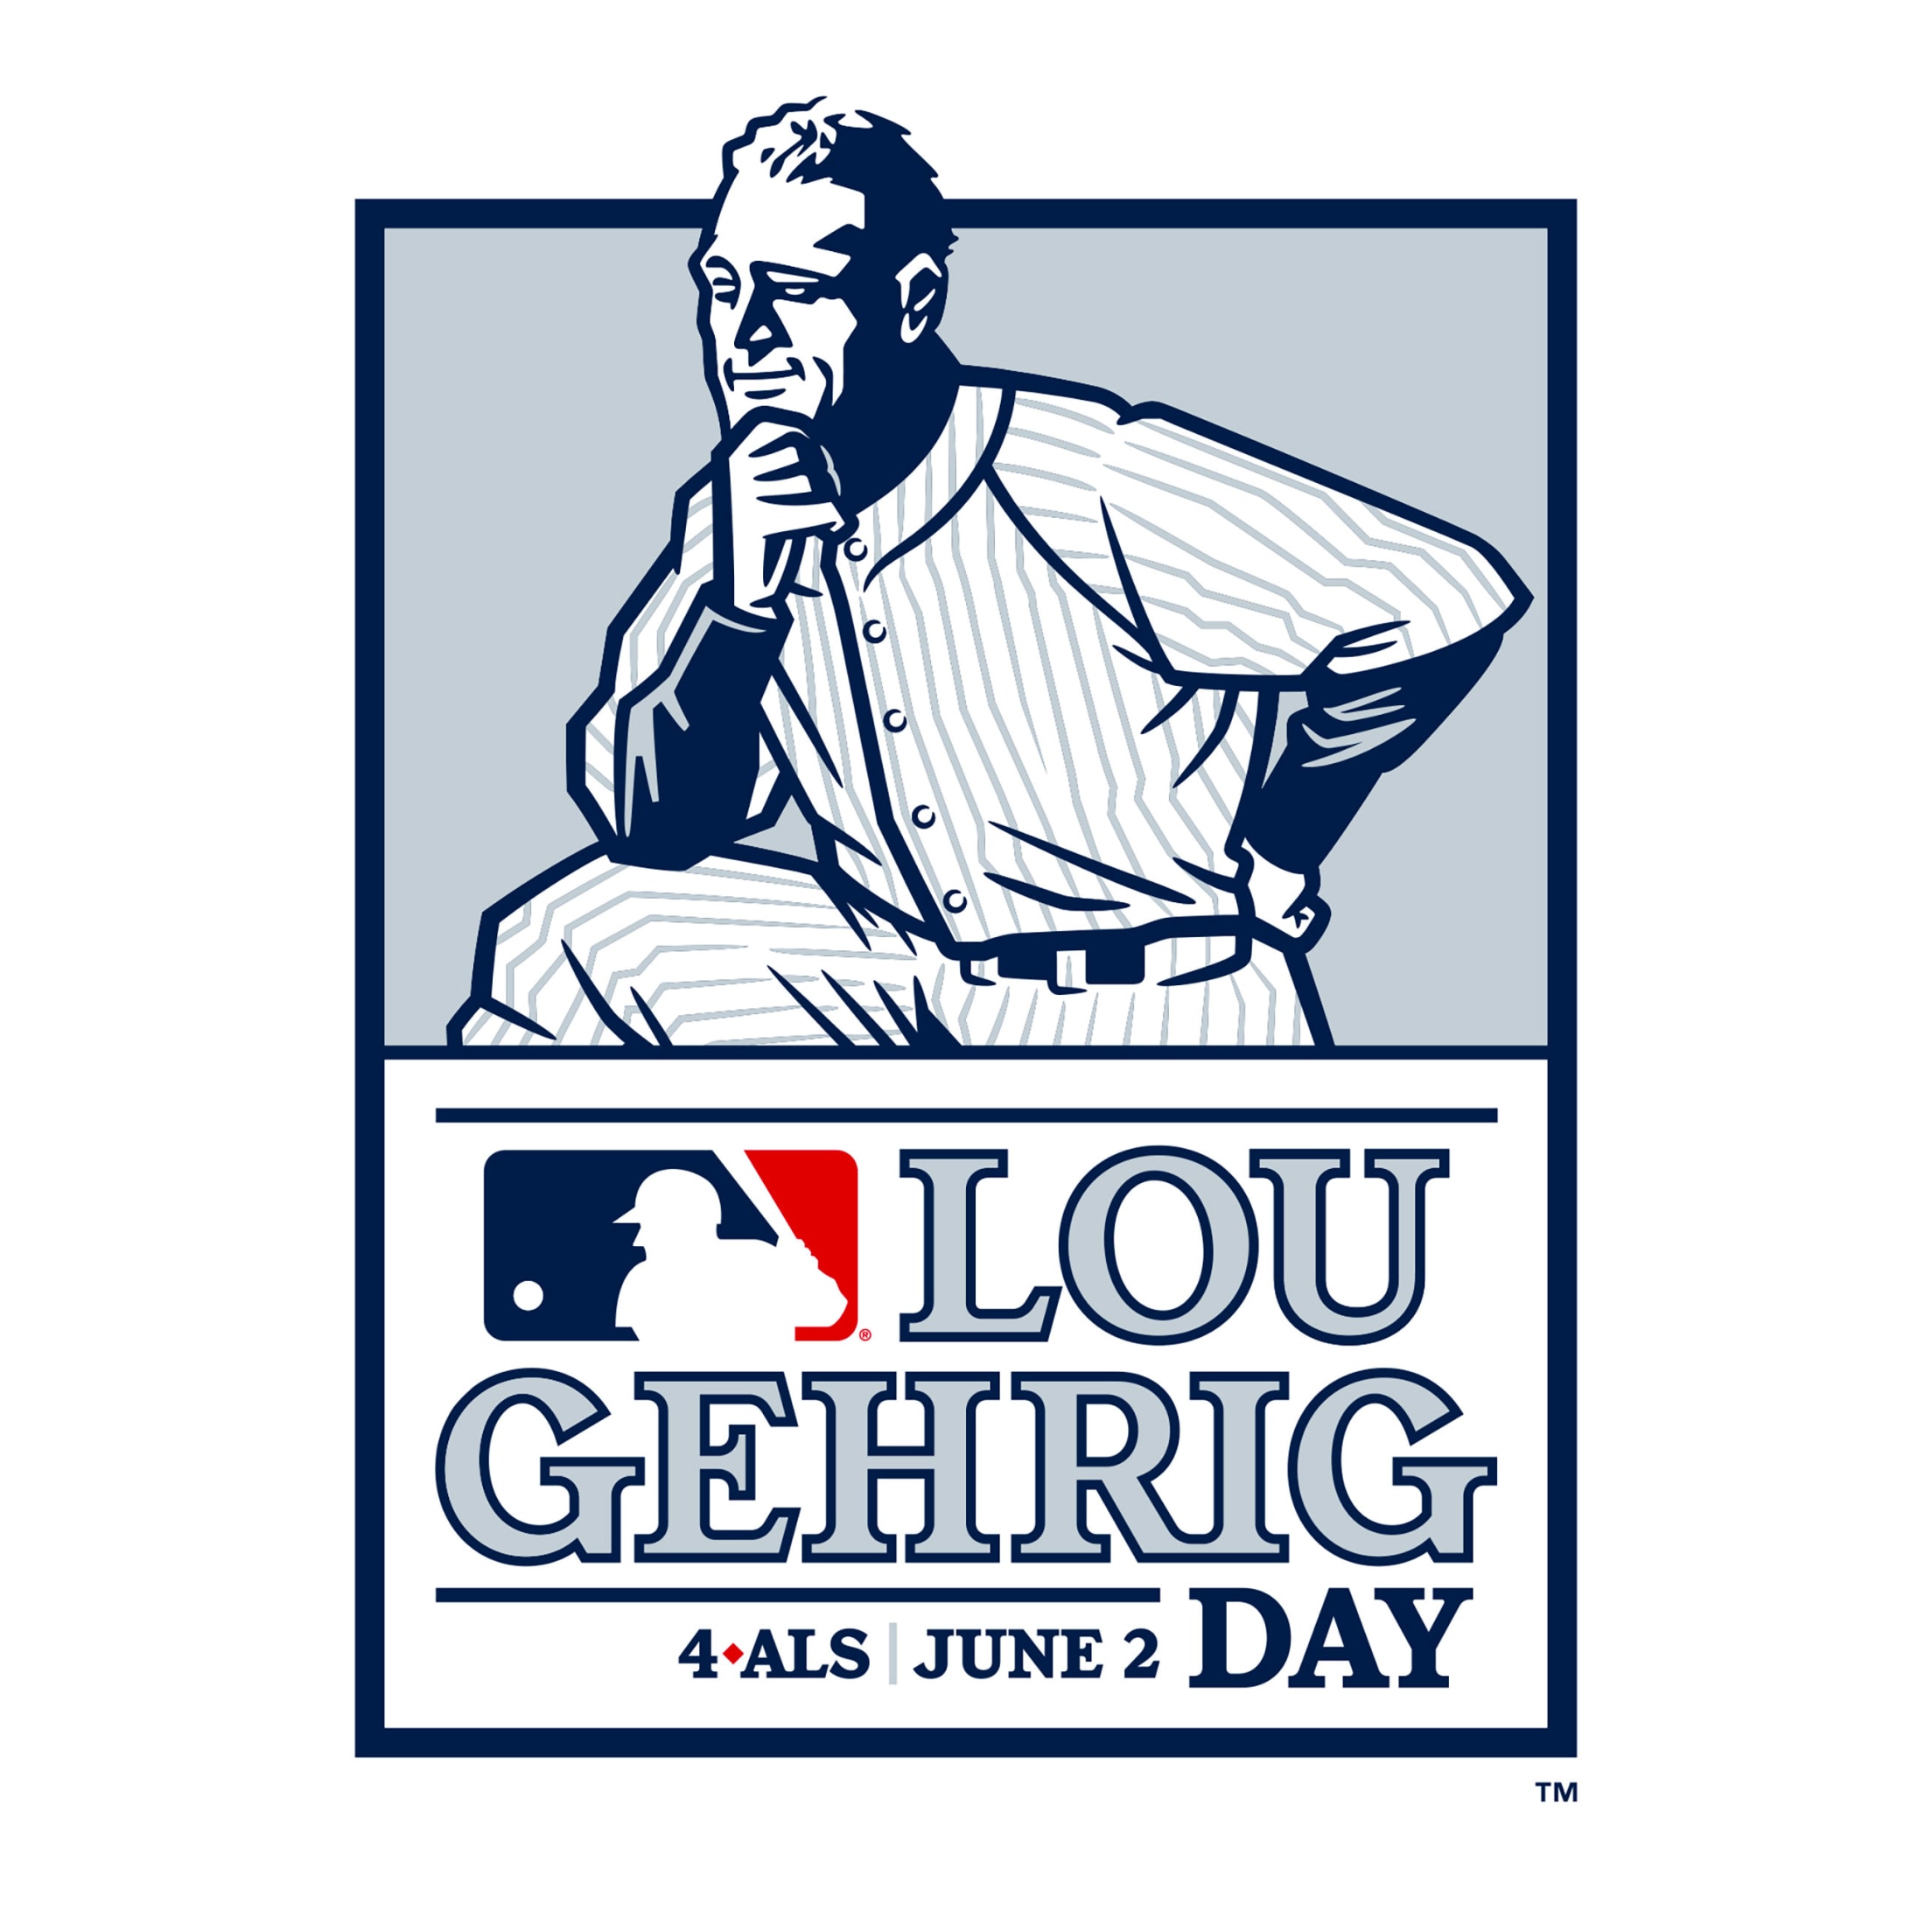 Atl Lou Gehrig Day Shirt